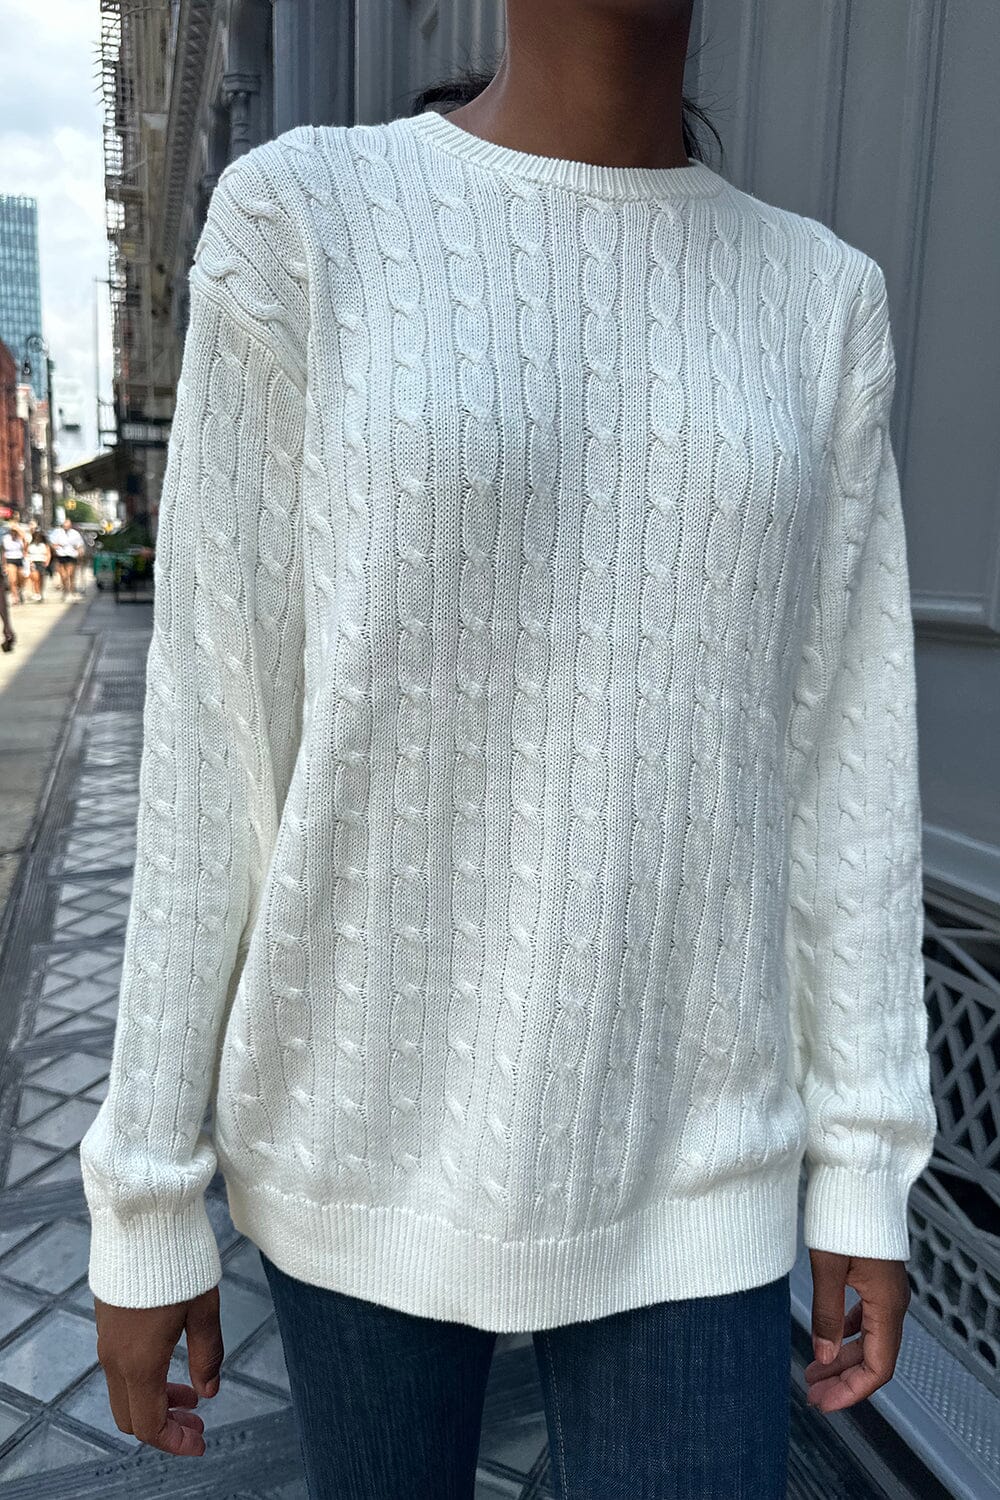 Brandy Melville Open Cardigan Sweaters for Women